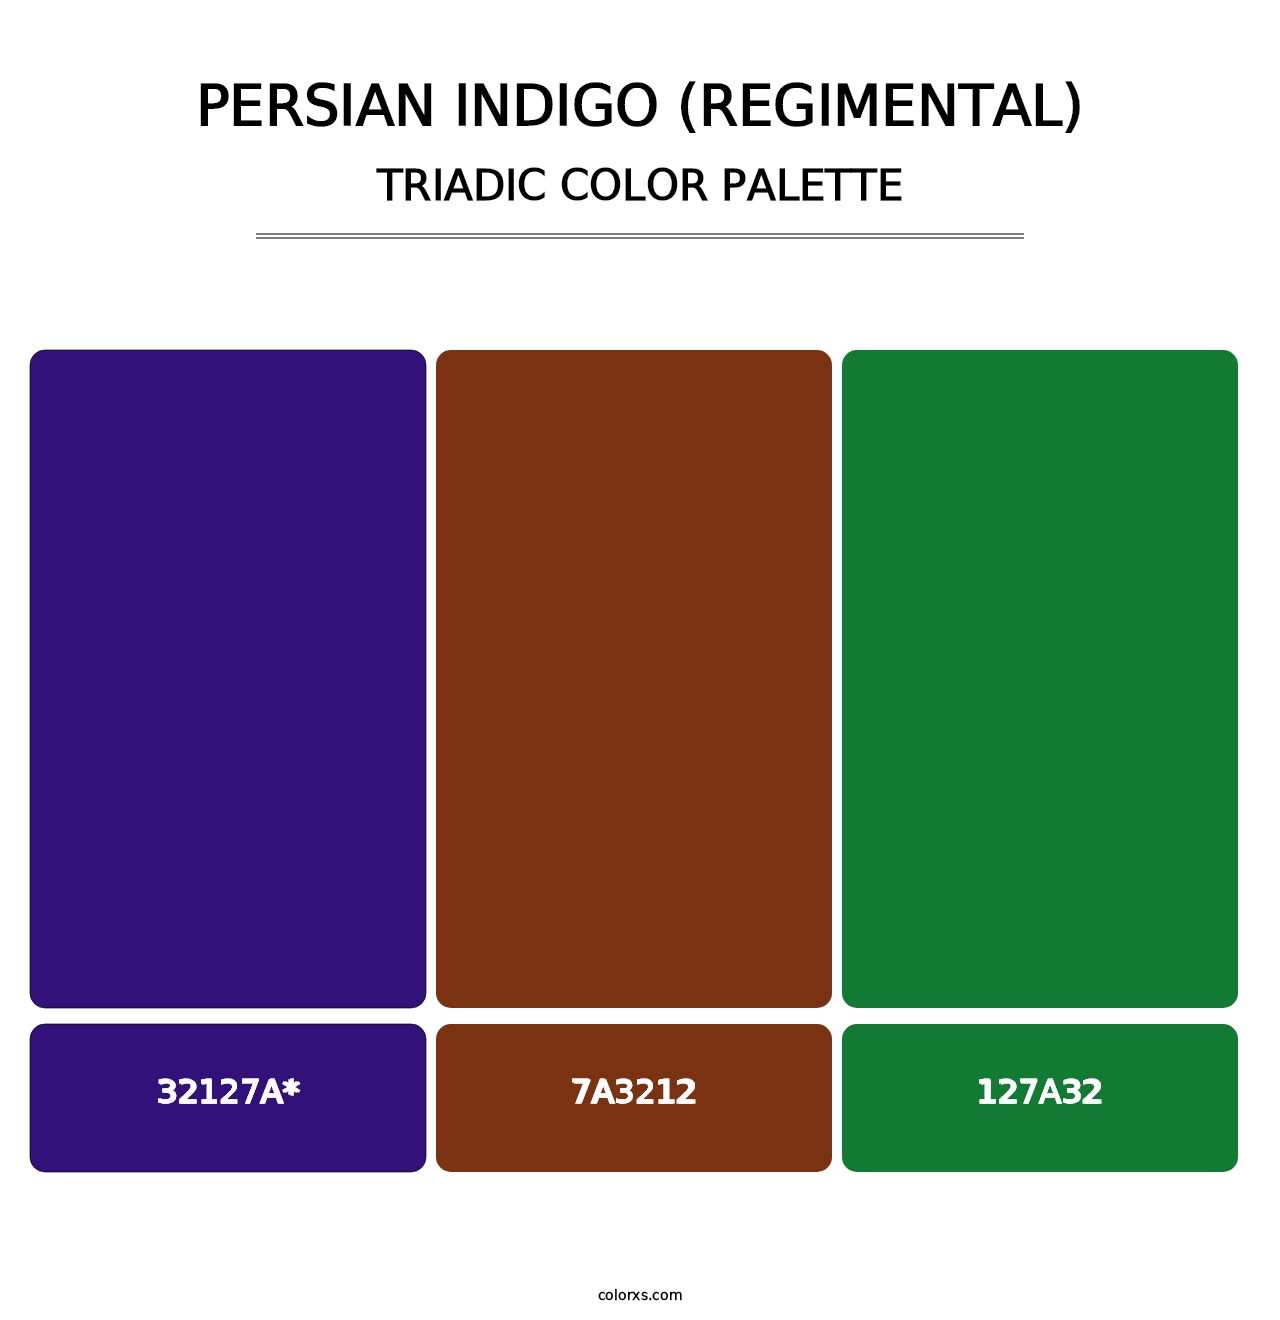 Persian Indigo (Regimental) - Triadic Color Palette